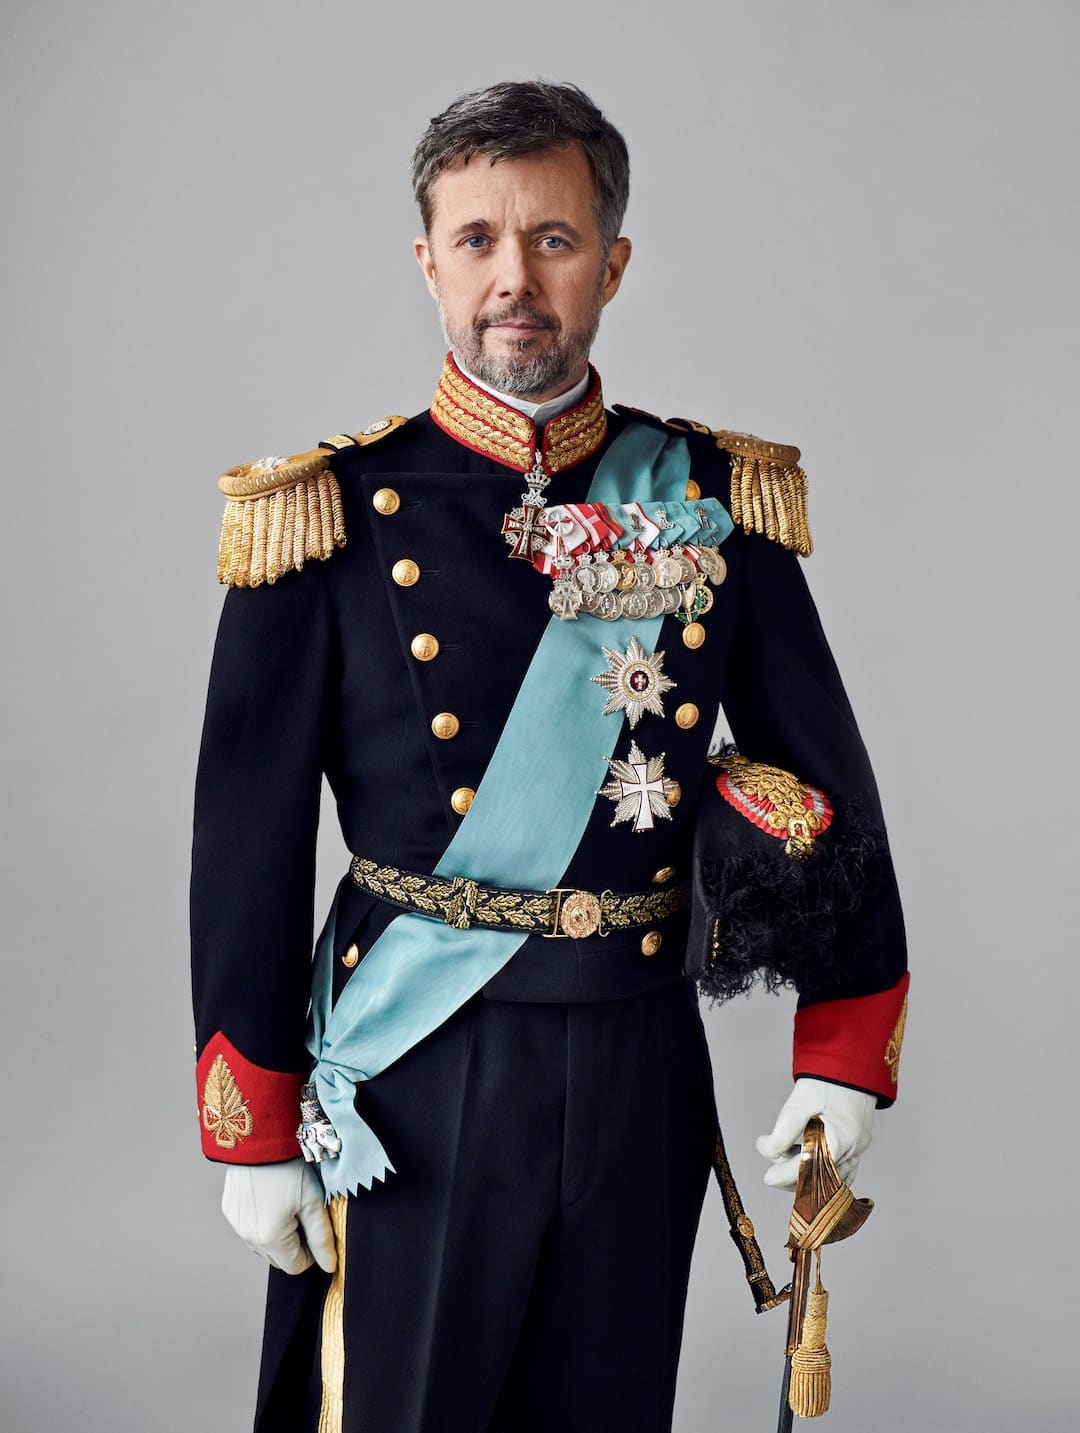 Frederik von Dänemark